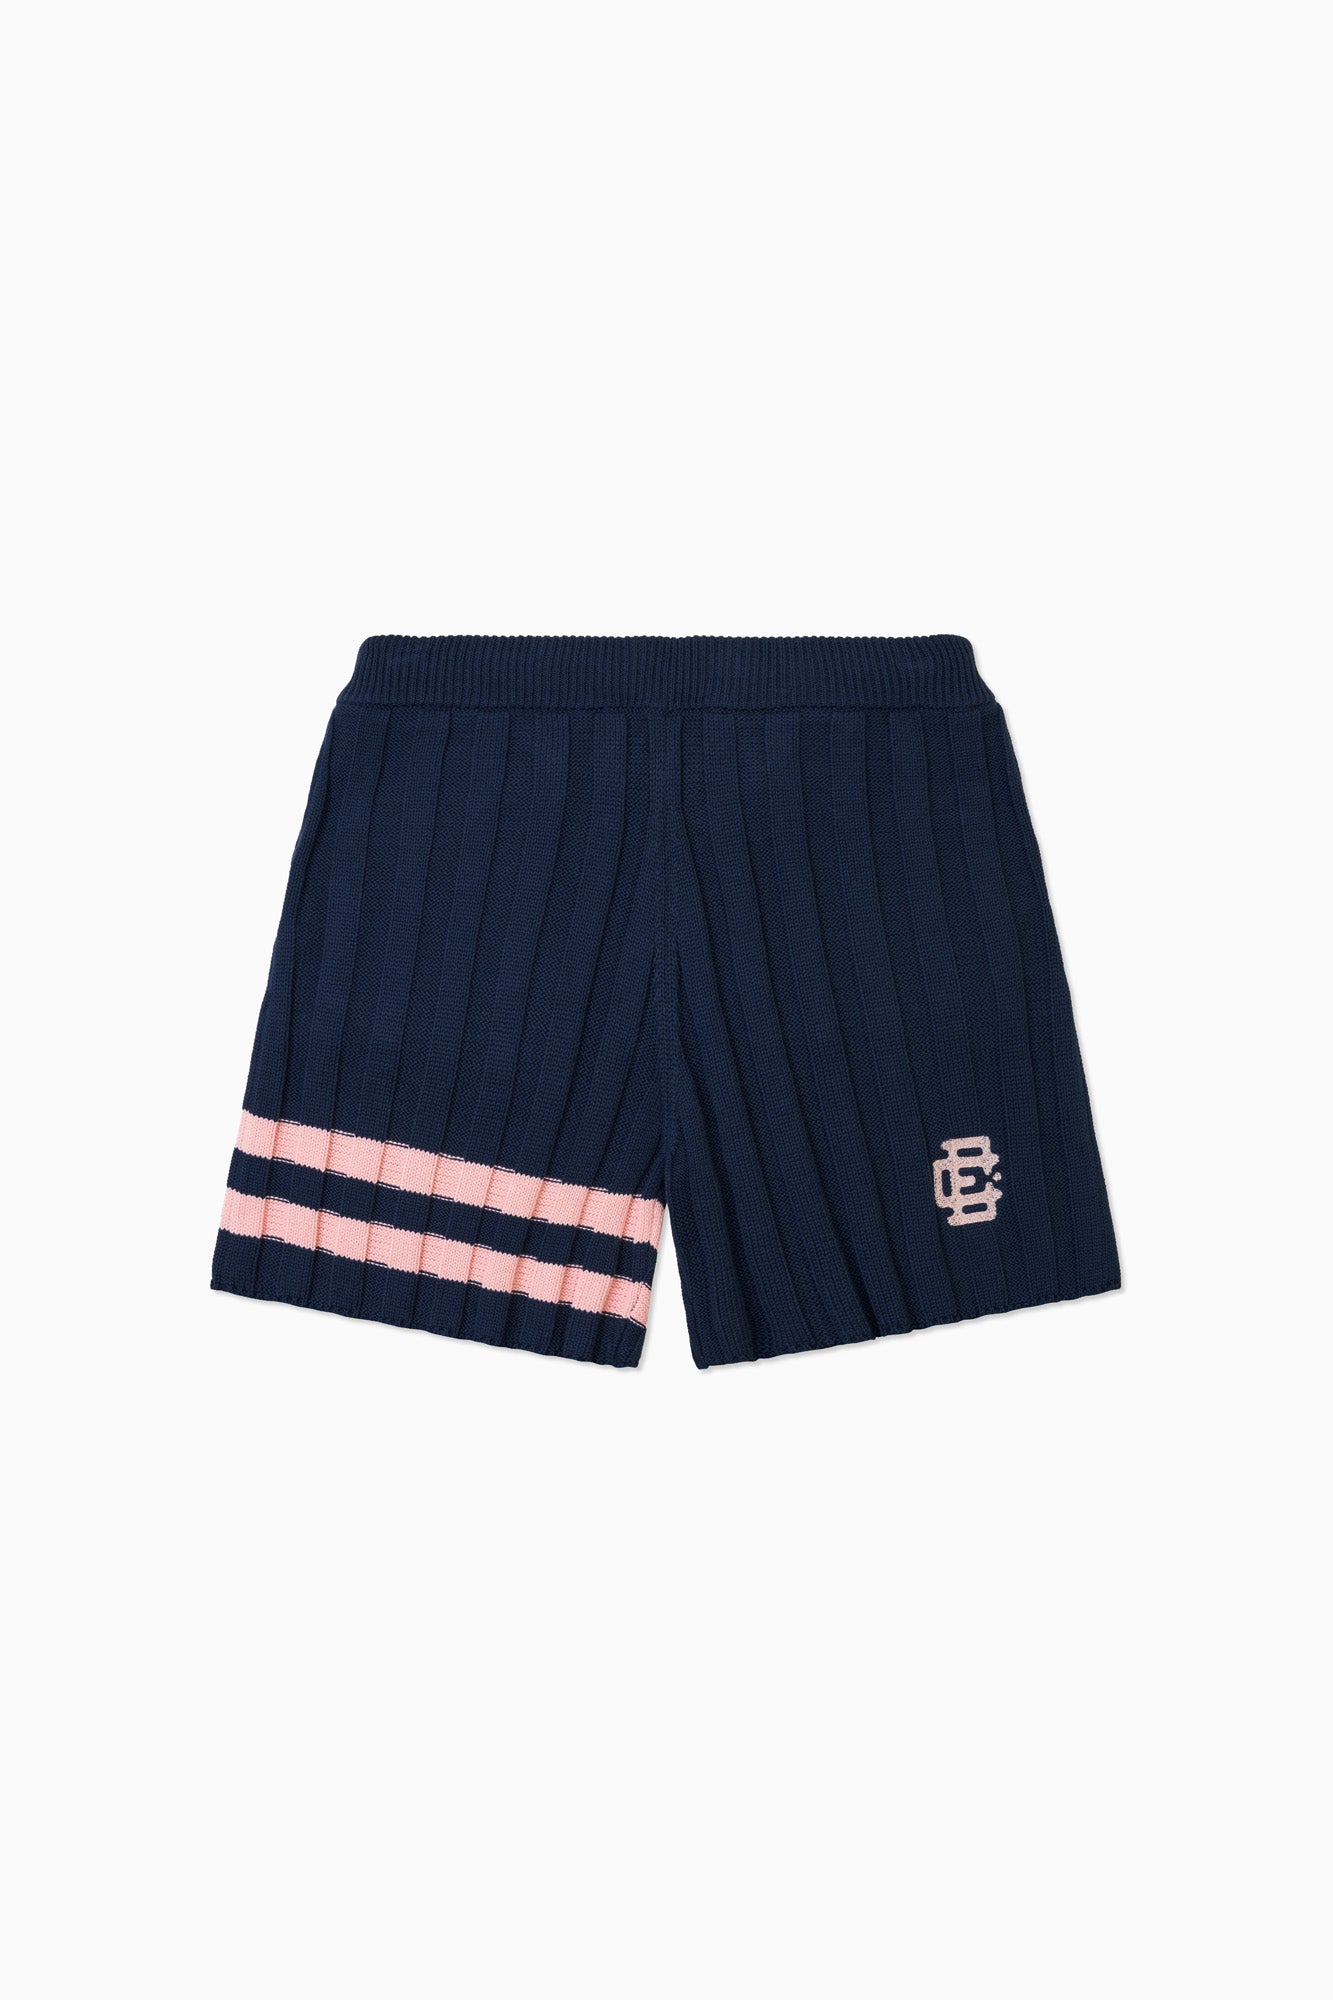 Sport Knit Short - Navy